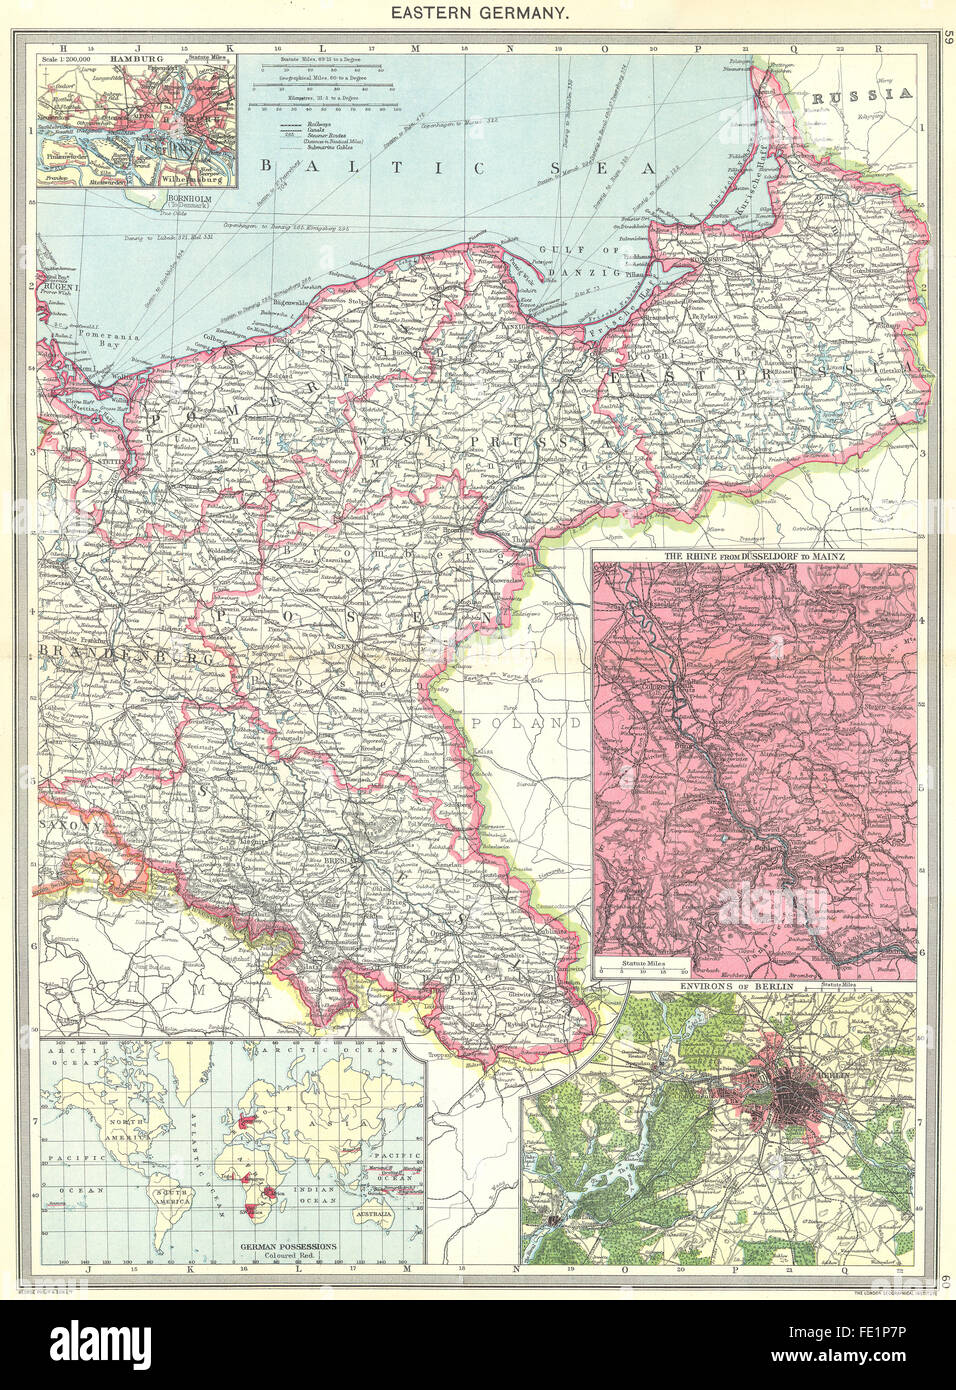 Ostdeutschland: Hamburg; Der Rhein; Berlin; Kolonien, 1907 Antike Landkarte Stockfoto